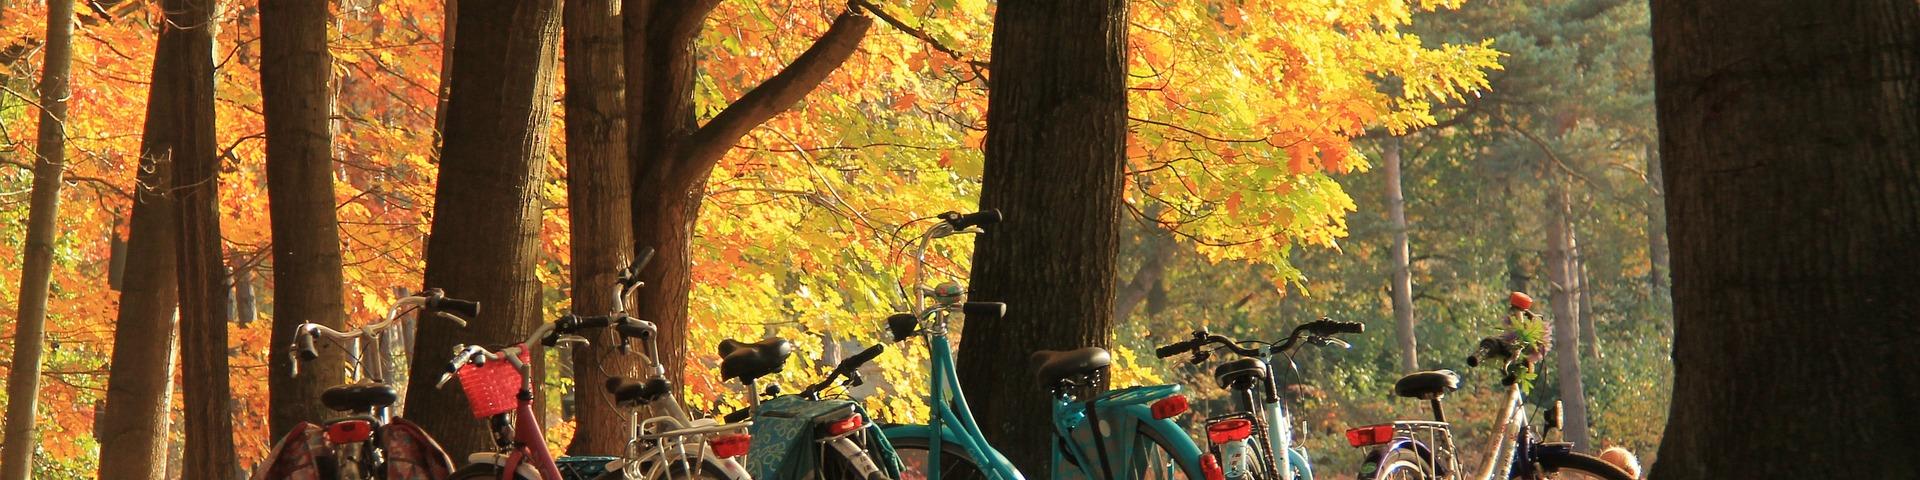 Herfst in park met fietsen tegen boom